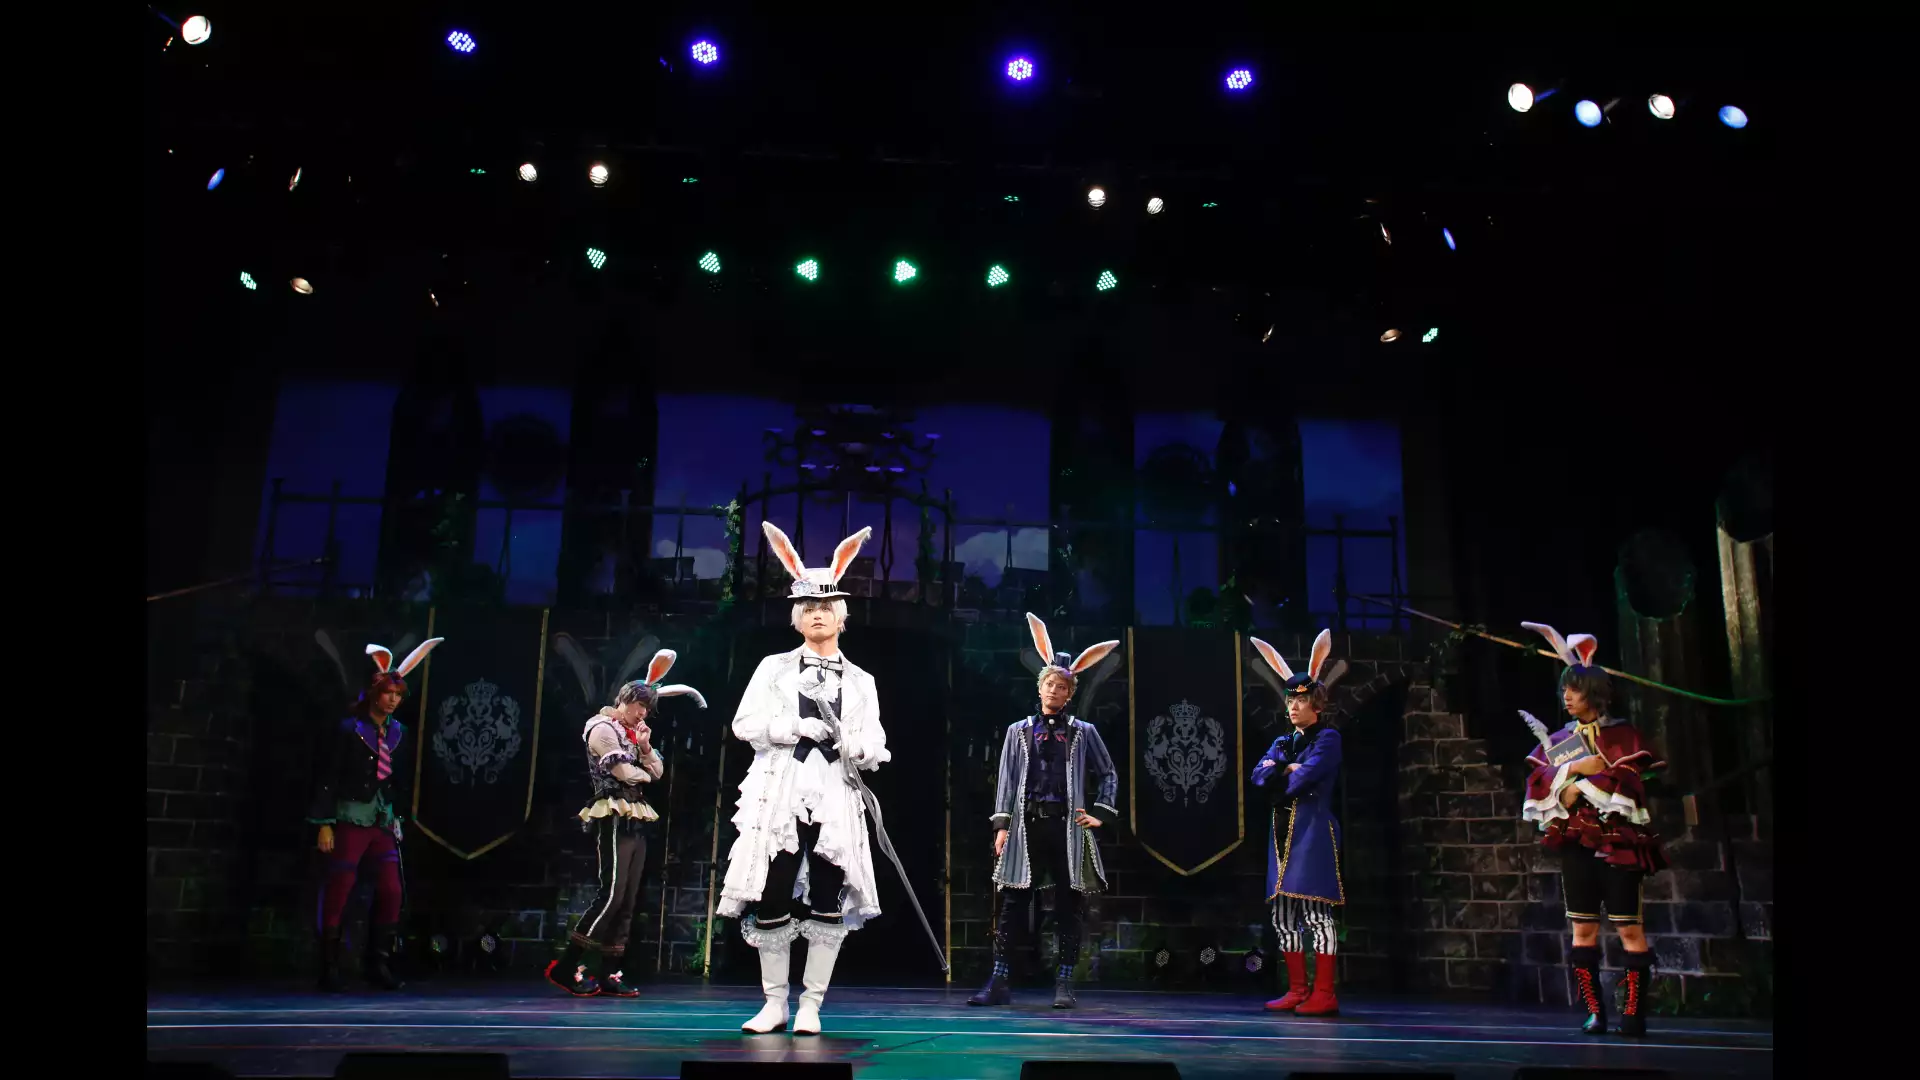 2.5次元ダンスライブ「ツキウタ。」ステージ 第5幕『Rabbits Kingdom』白兎王国Ver.